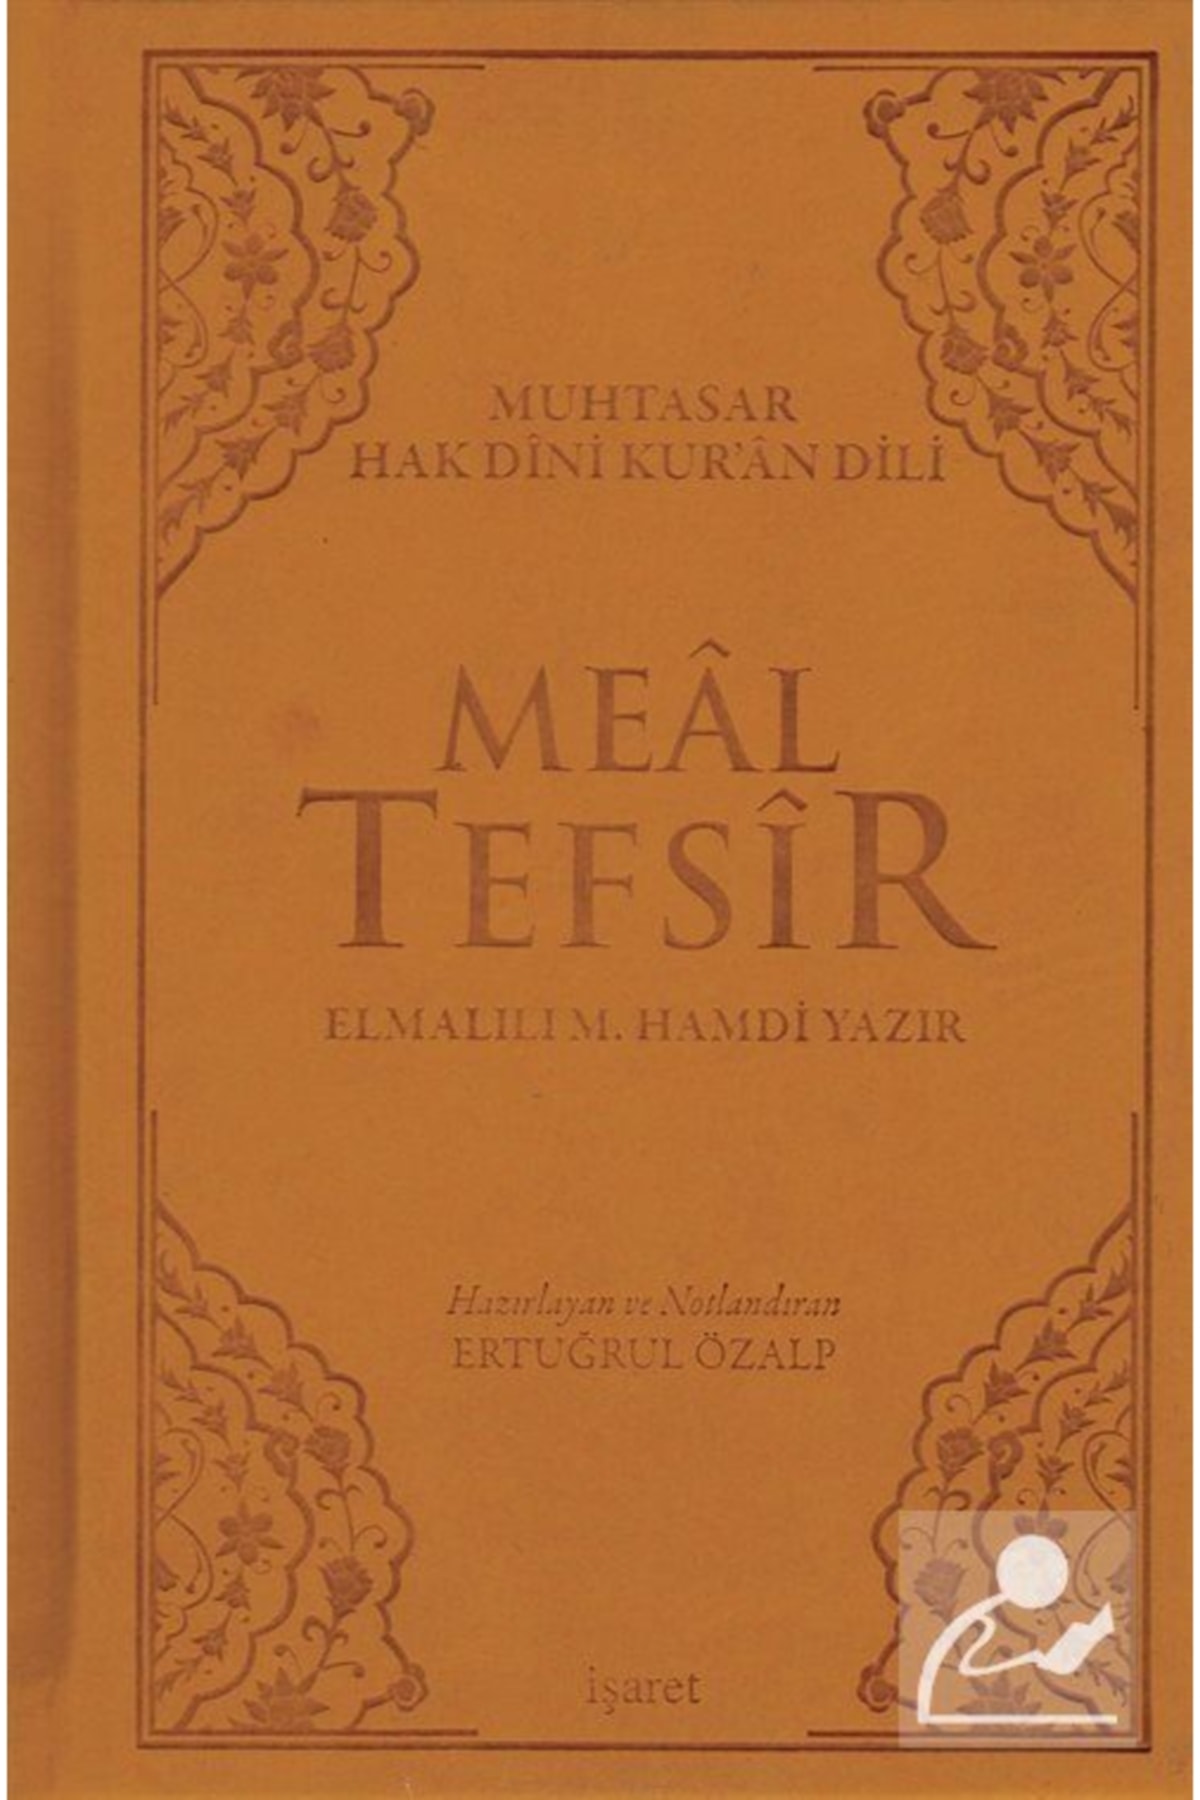 İşaret Yayınları Muhtasar Hak Dini Kuran Dili Meal Tefsir (13,5X21)